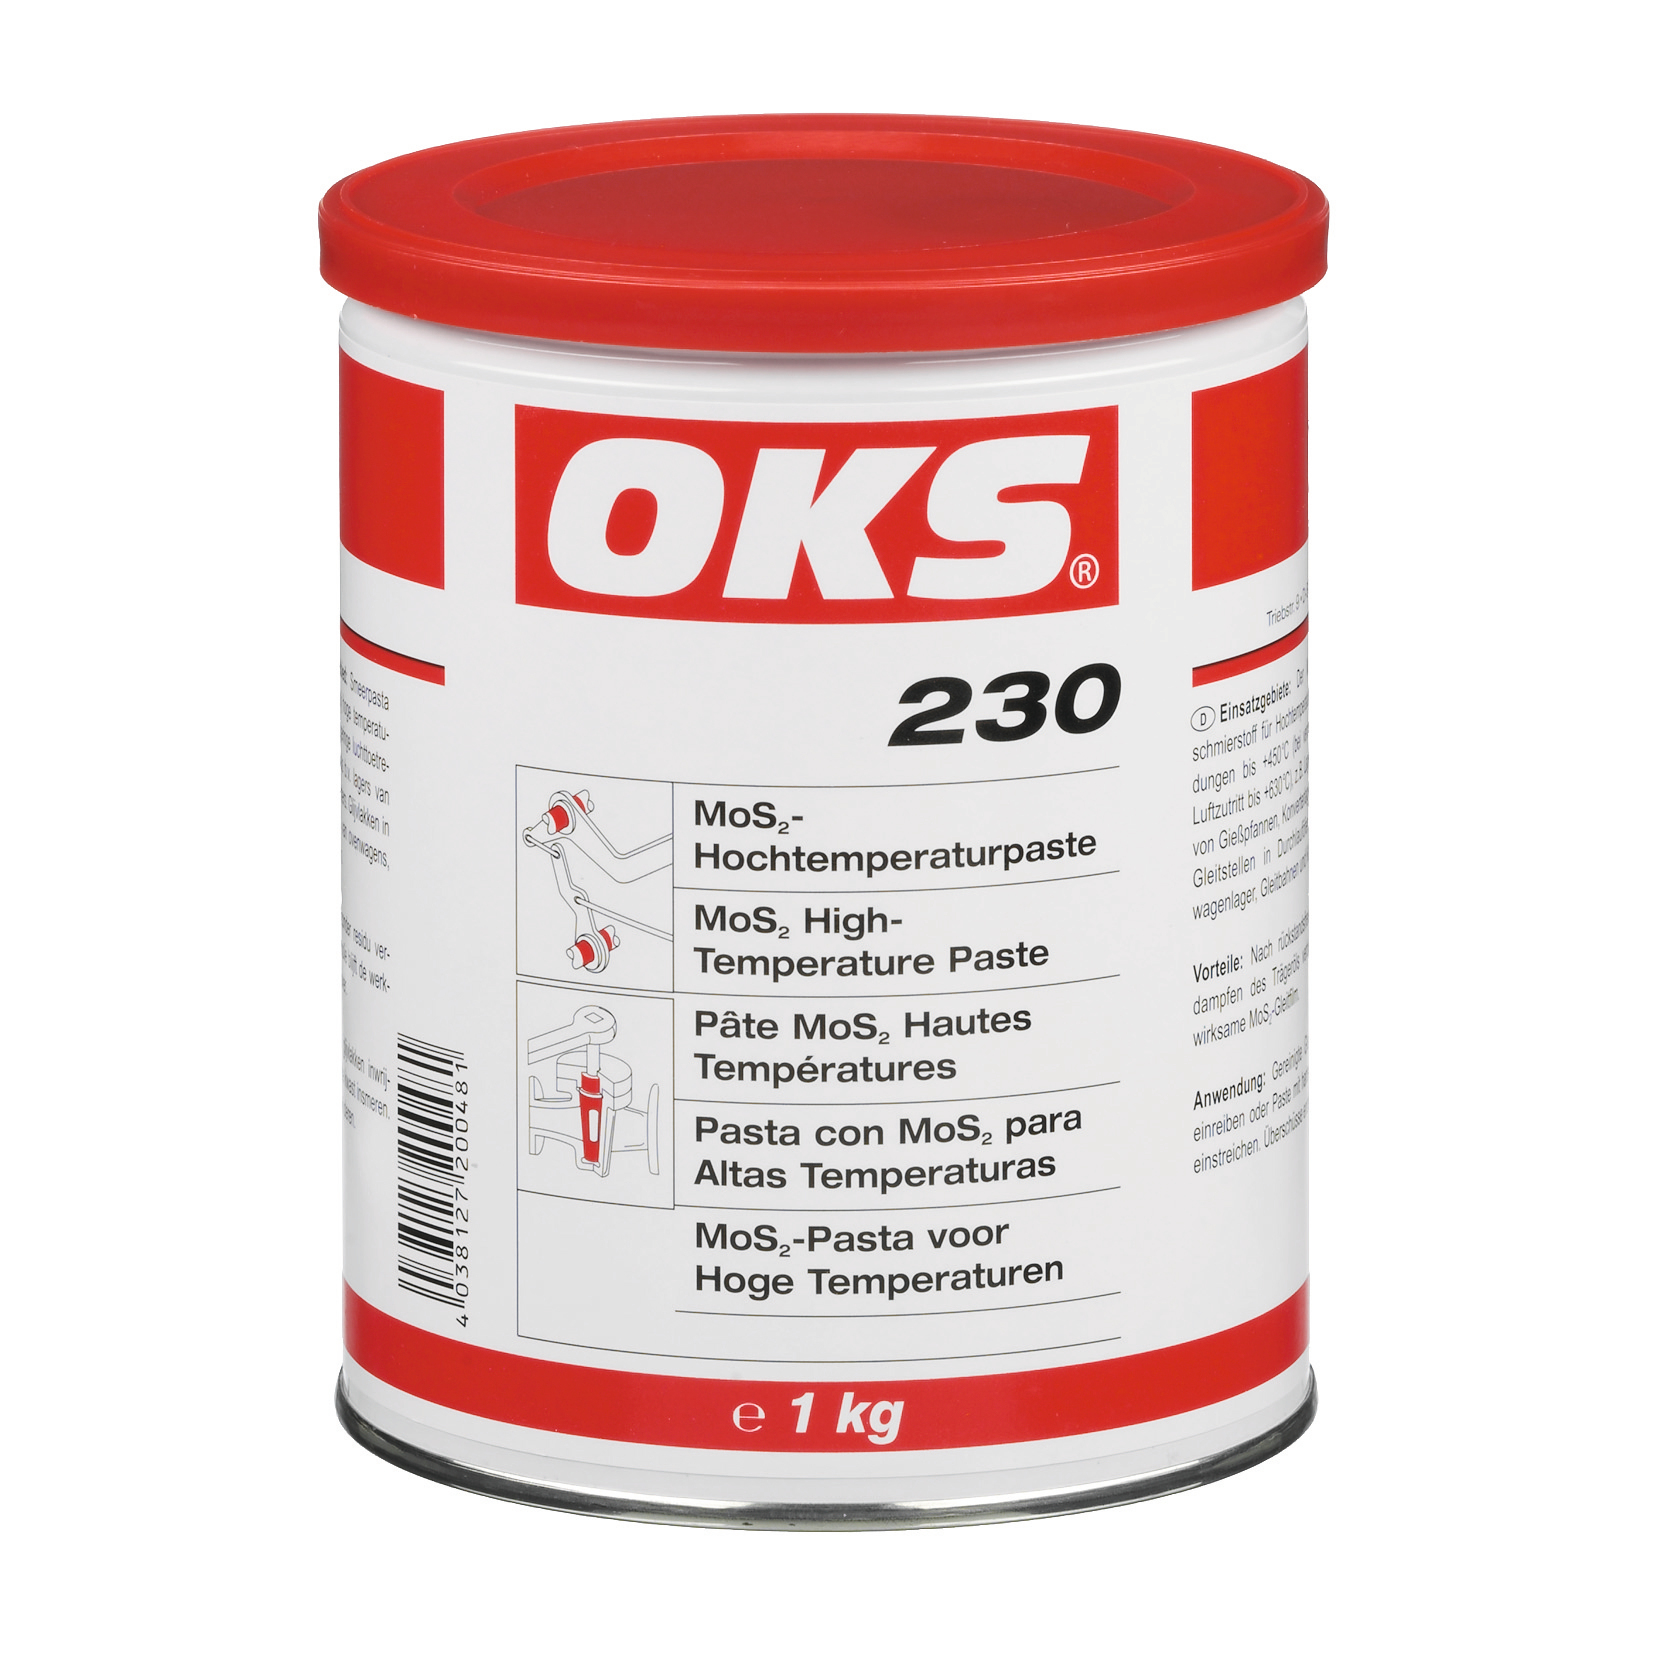 OKS0230-1 OKS 230 is een hoge-temperatuurpasta met MoS₂.